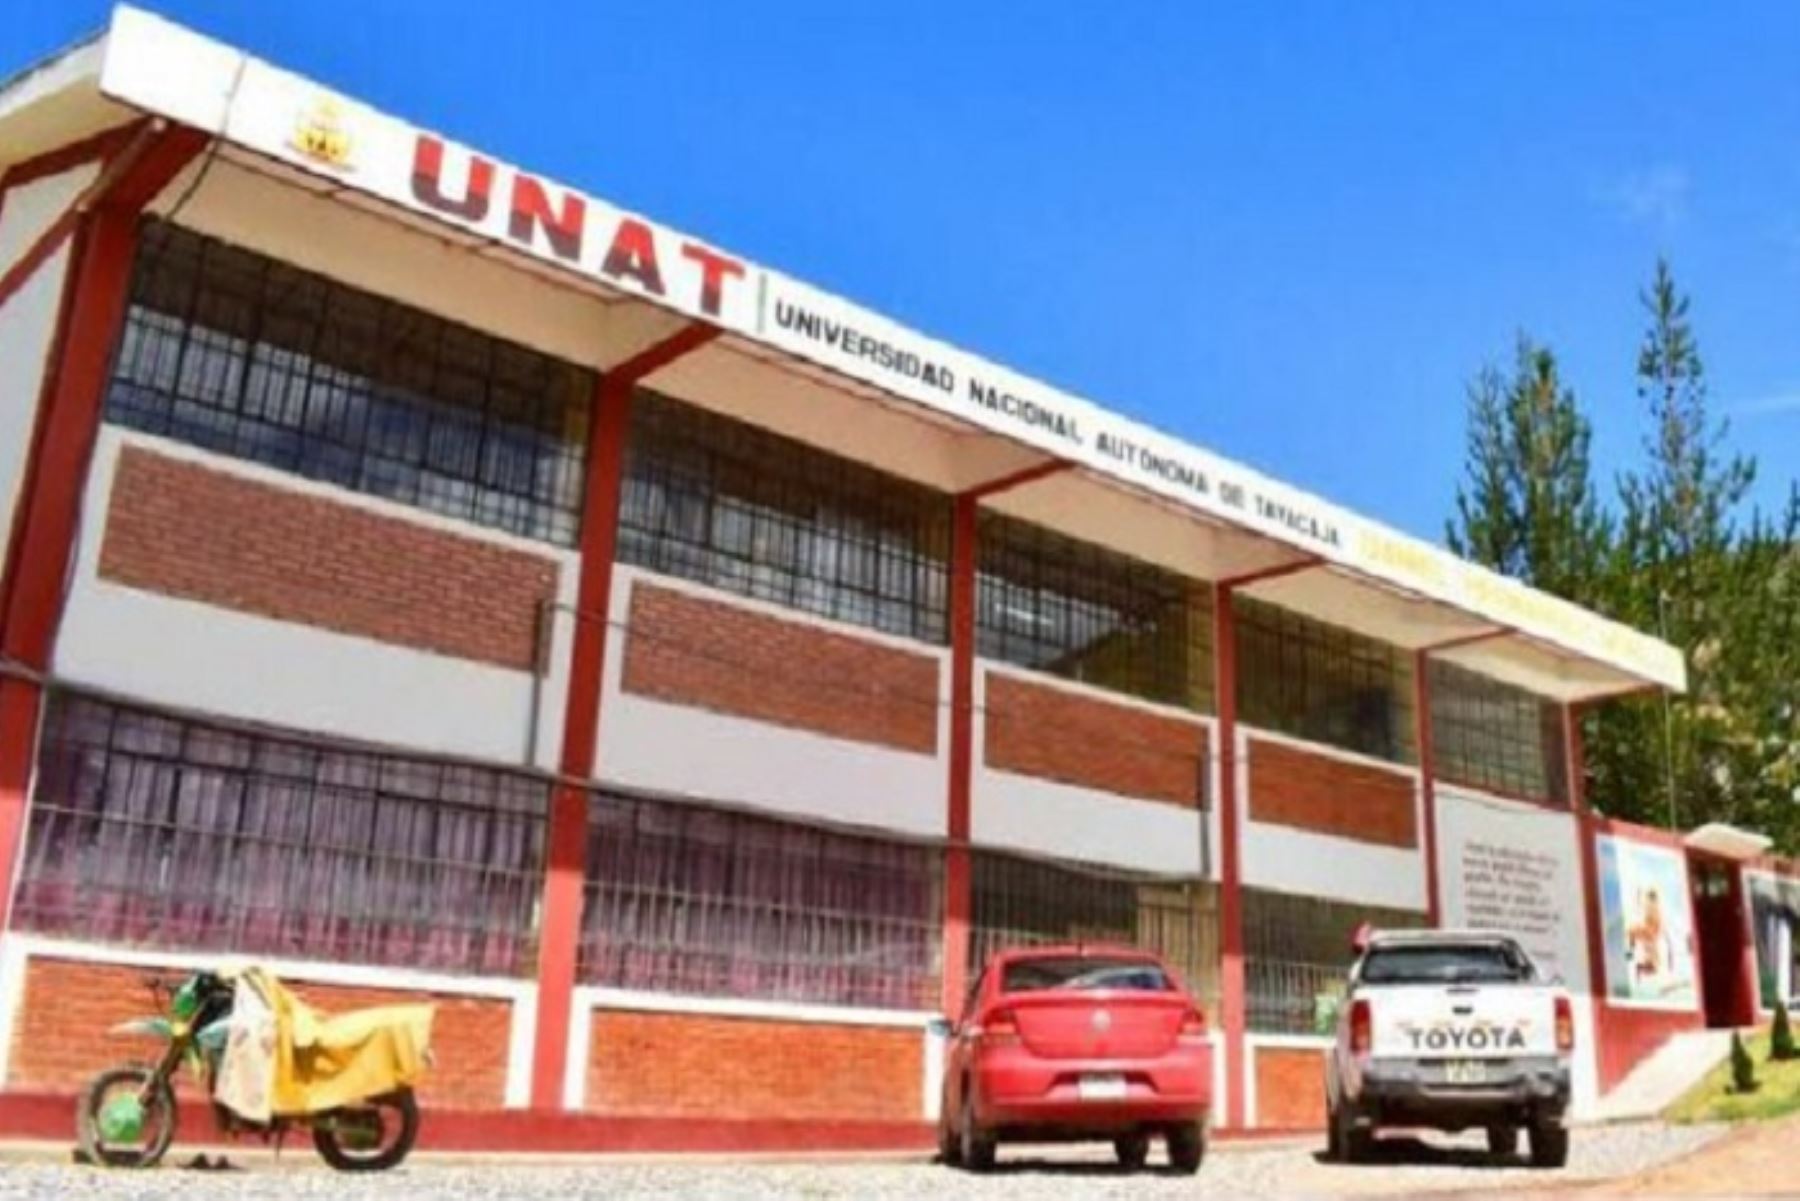 Minedu reconformará comisión organizadora de Universidad Nacional Autónoma de Tayacaja